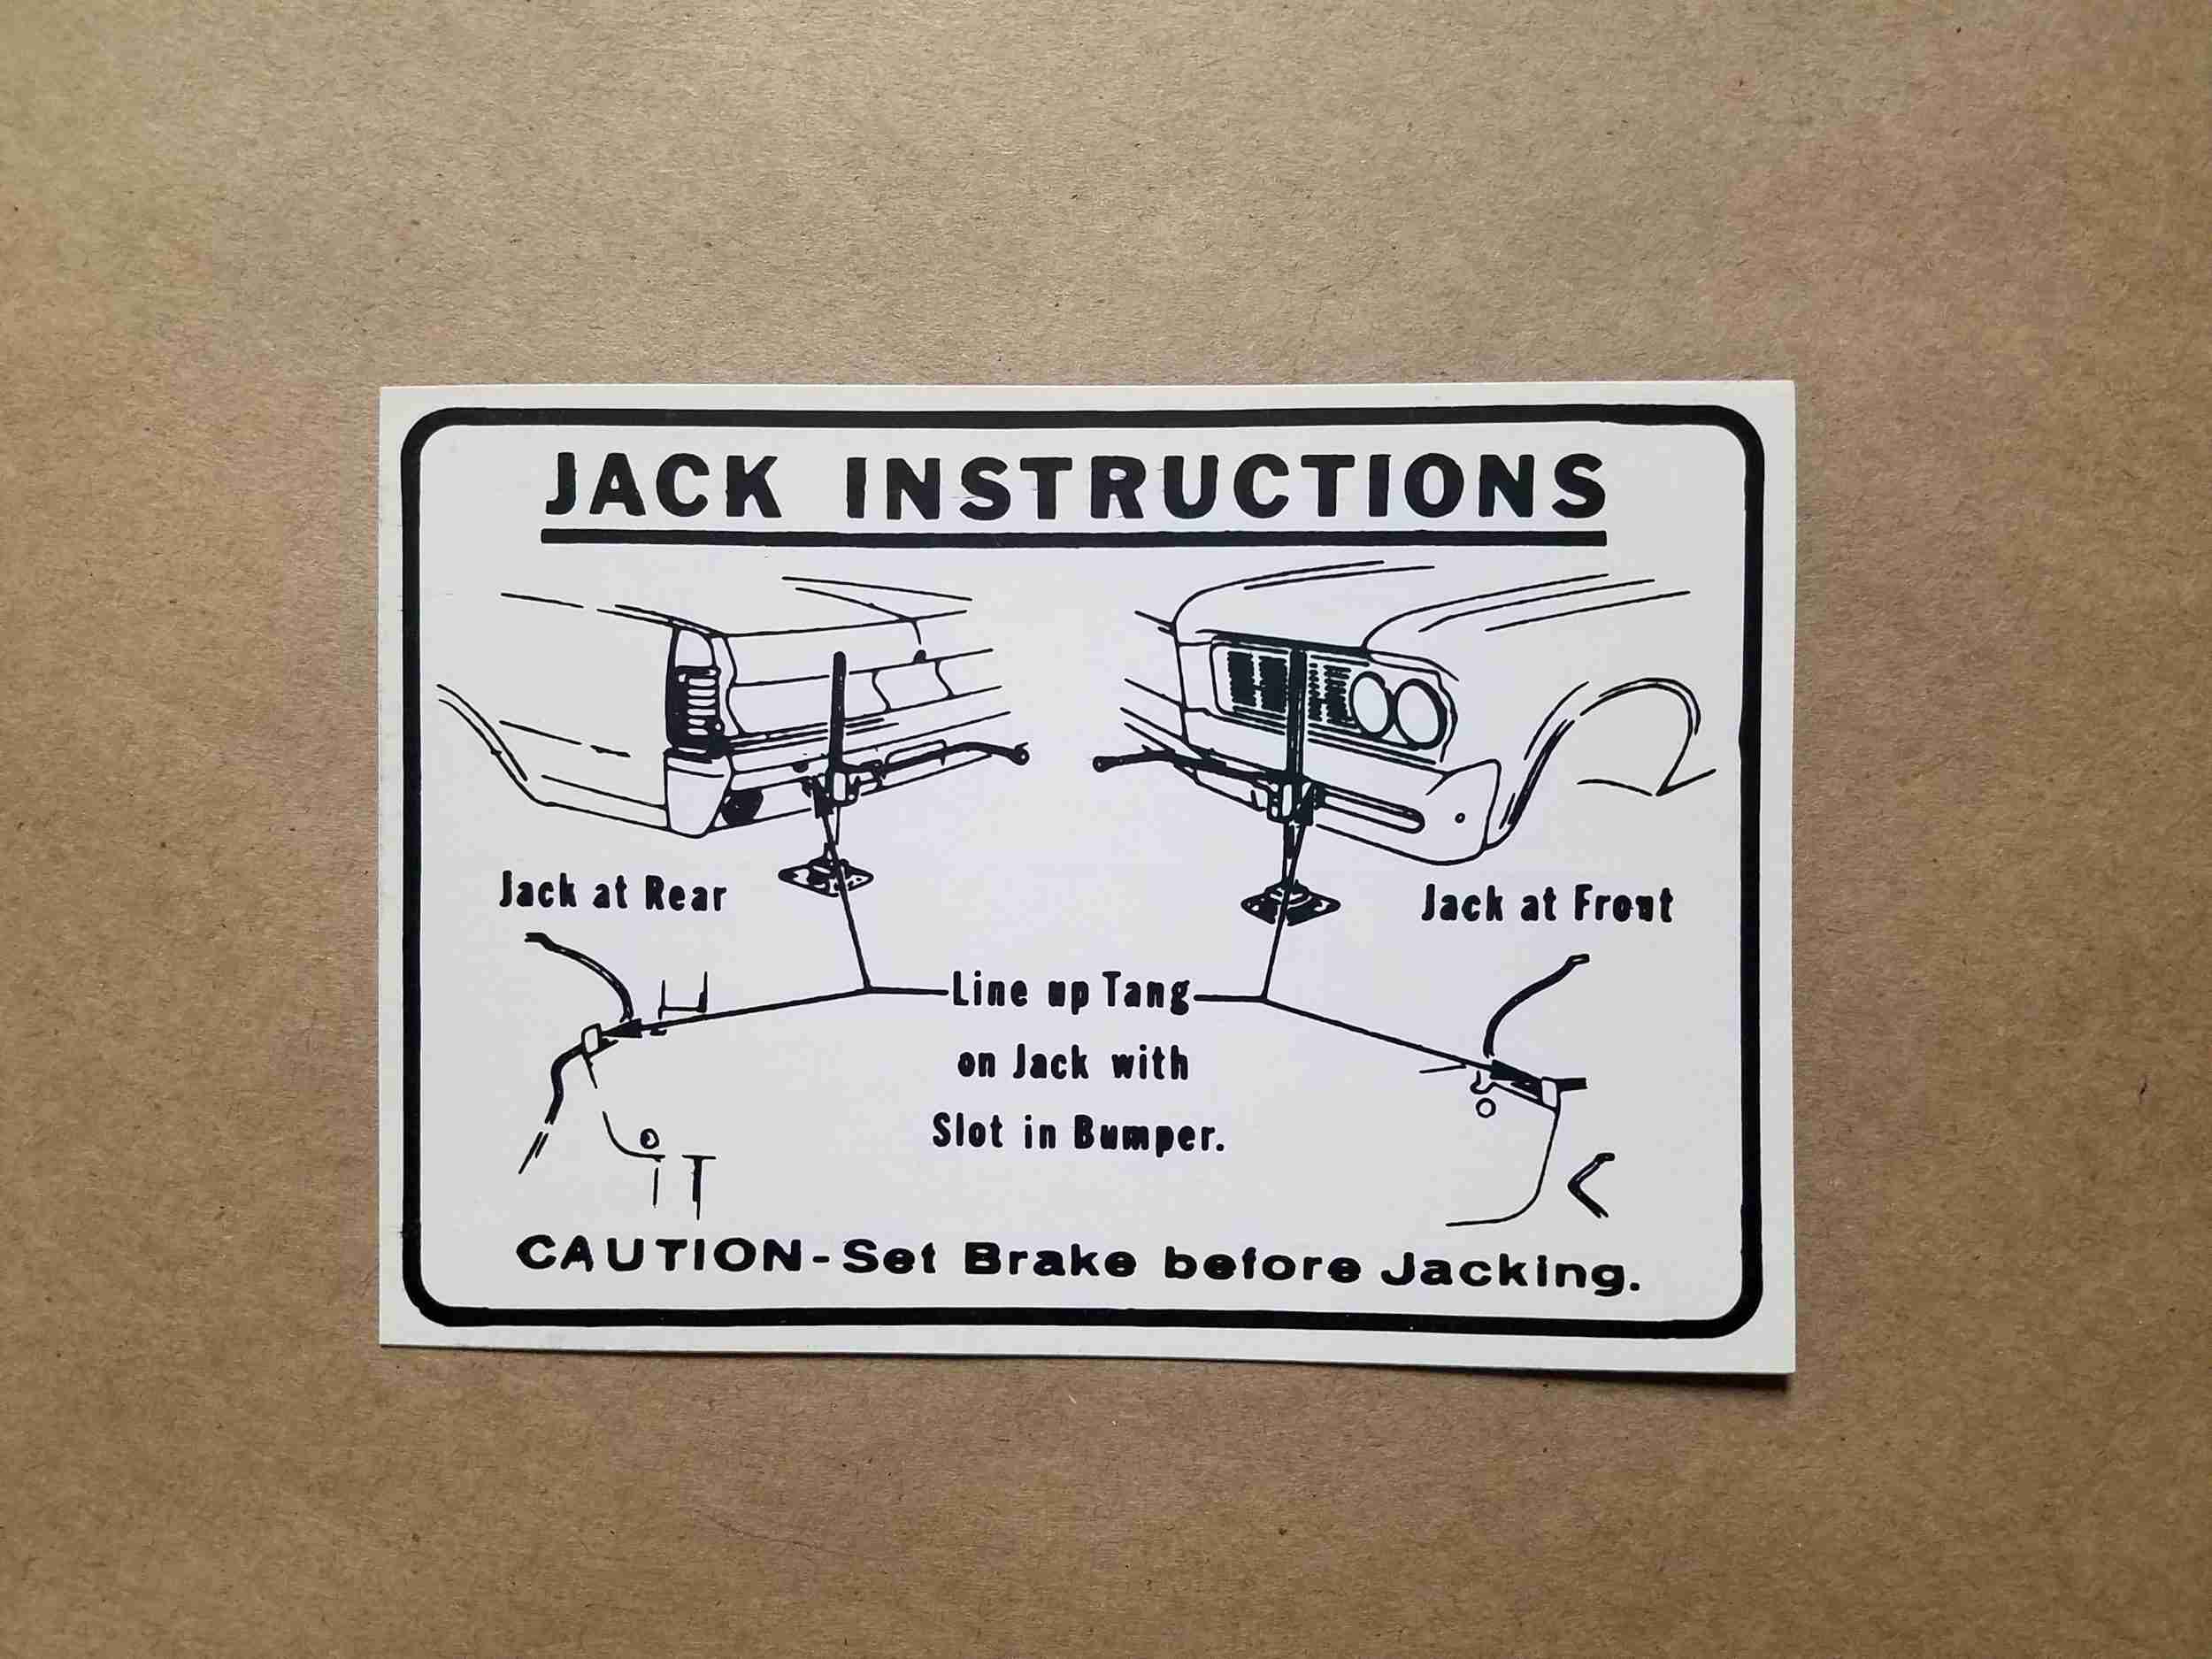 1964 Jack Instruction A body